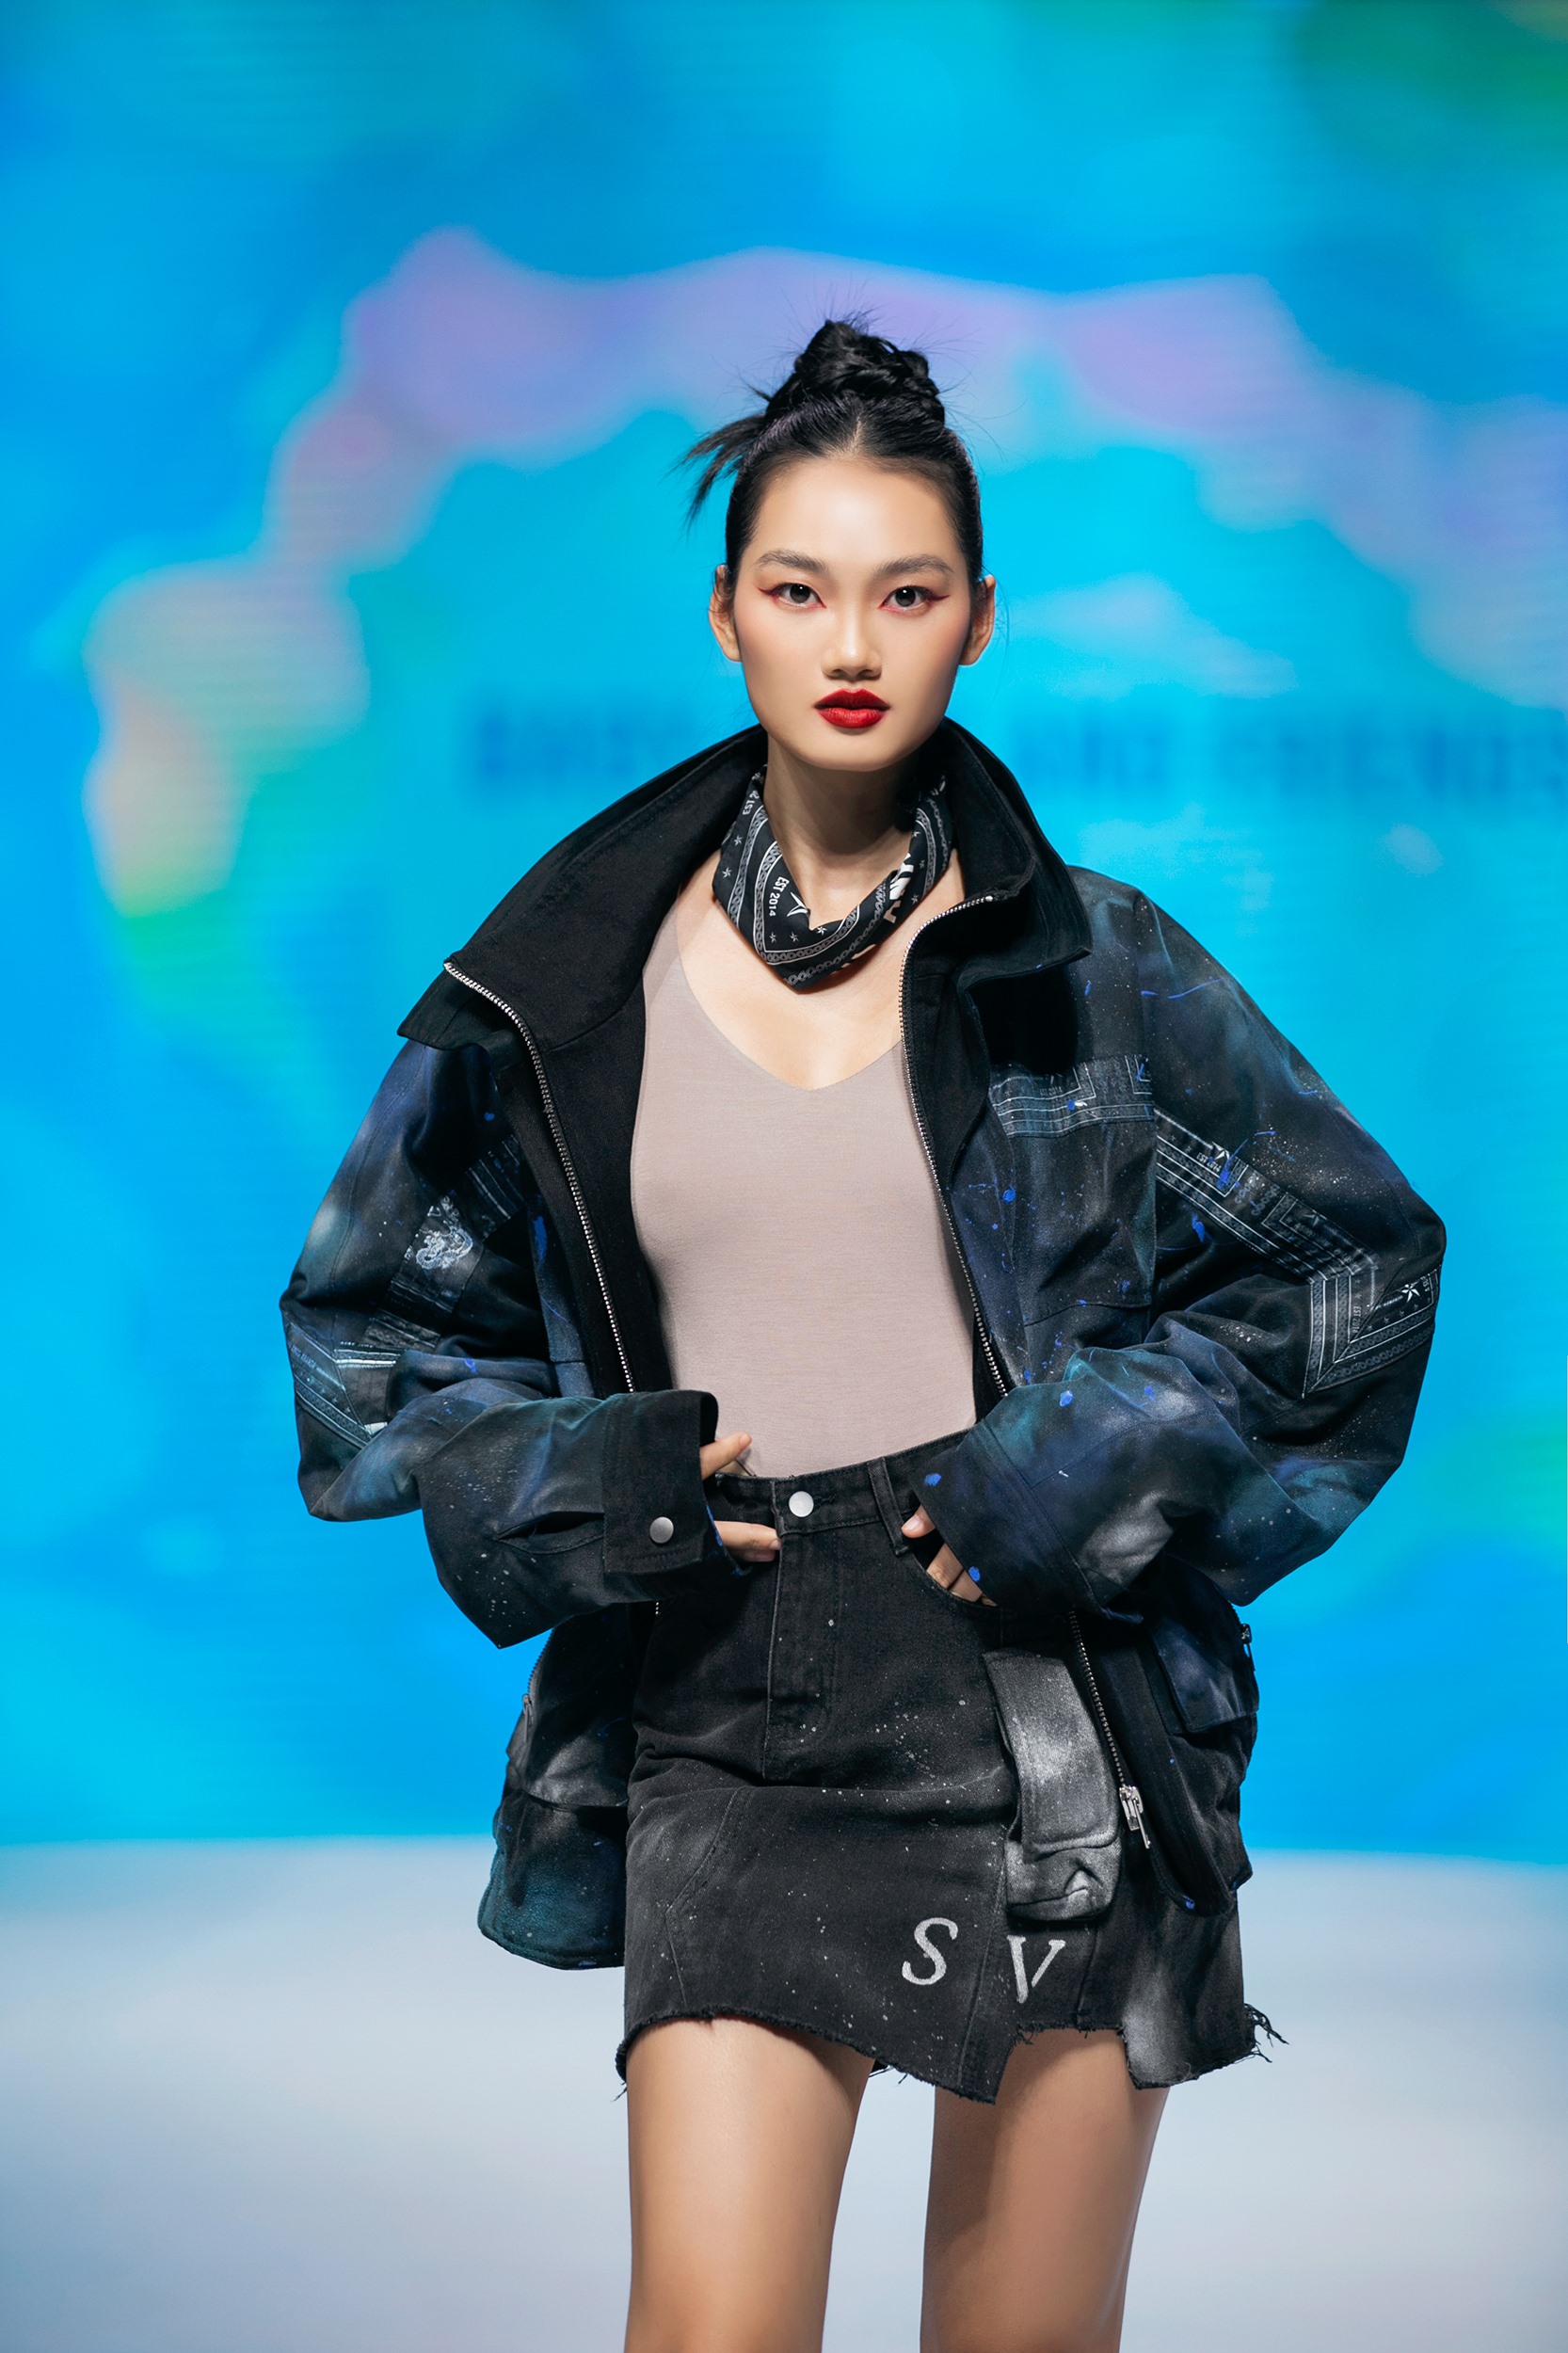 Quán quân Siêu mẫu Châu Á - Winner Supermodel Me 2021 Quỳnh Anh đã có những sải bước trên sàn diễn.